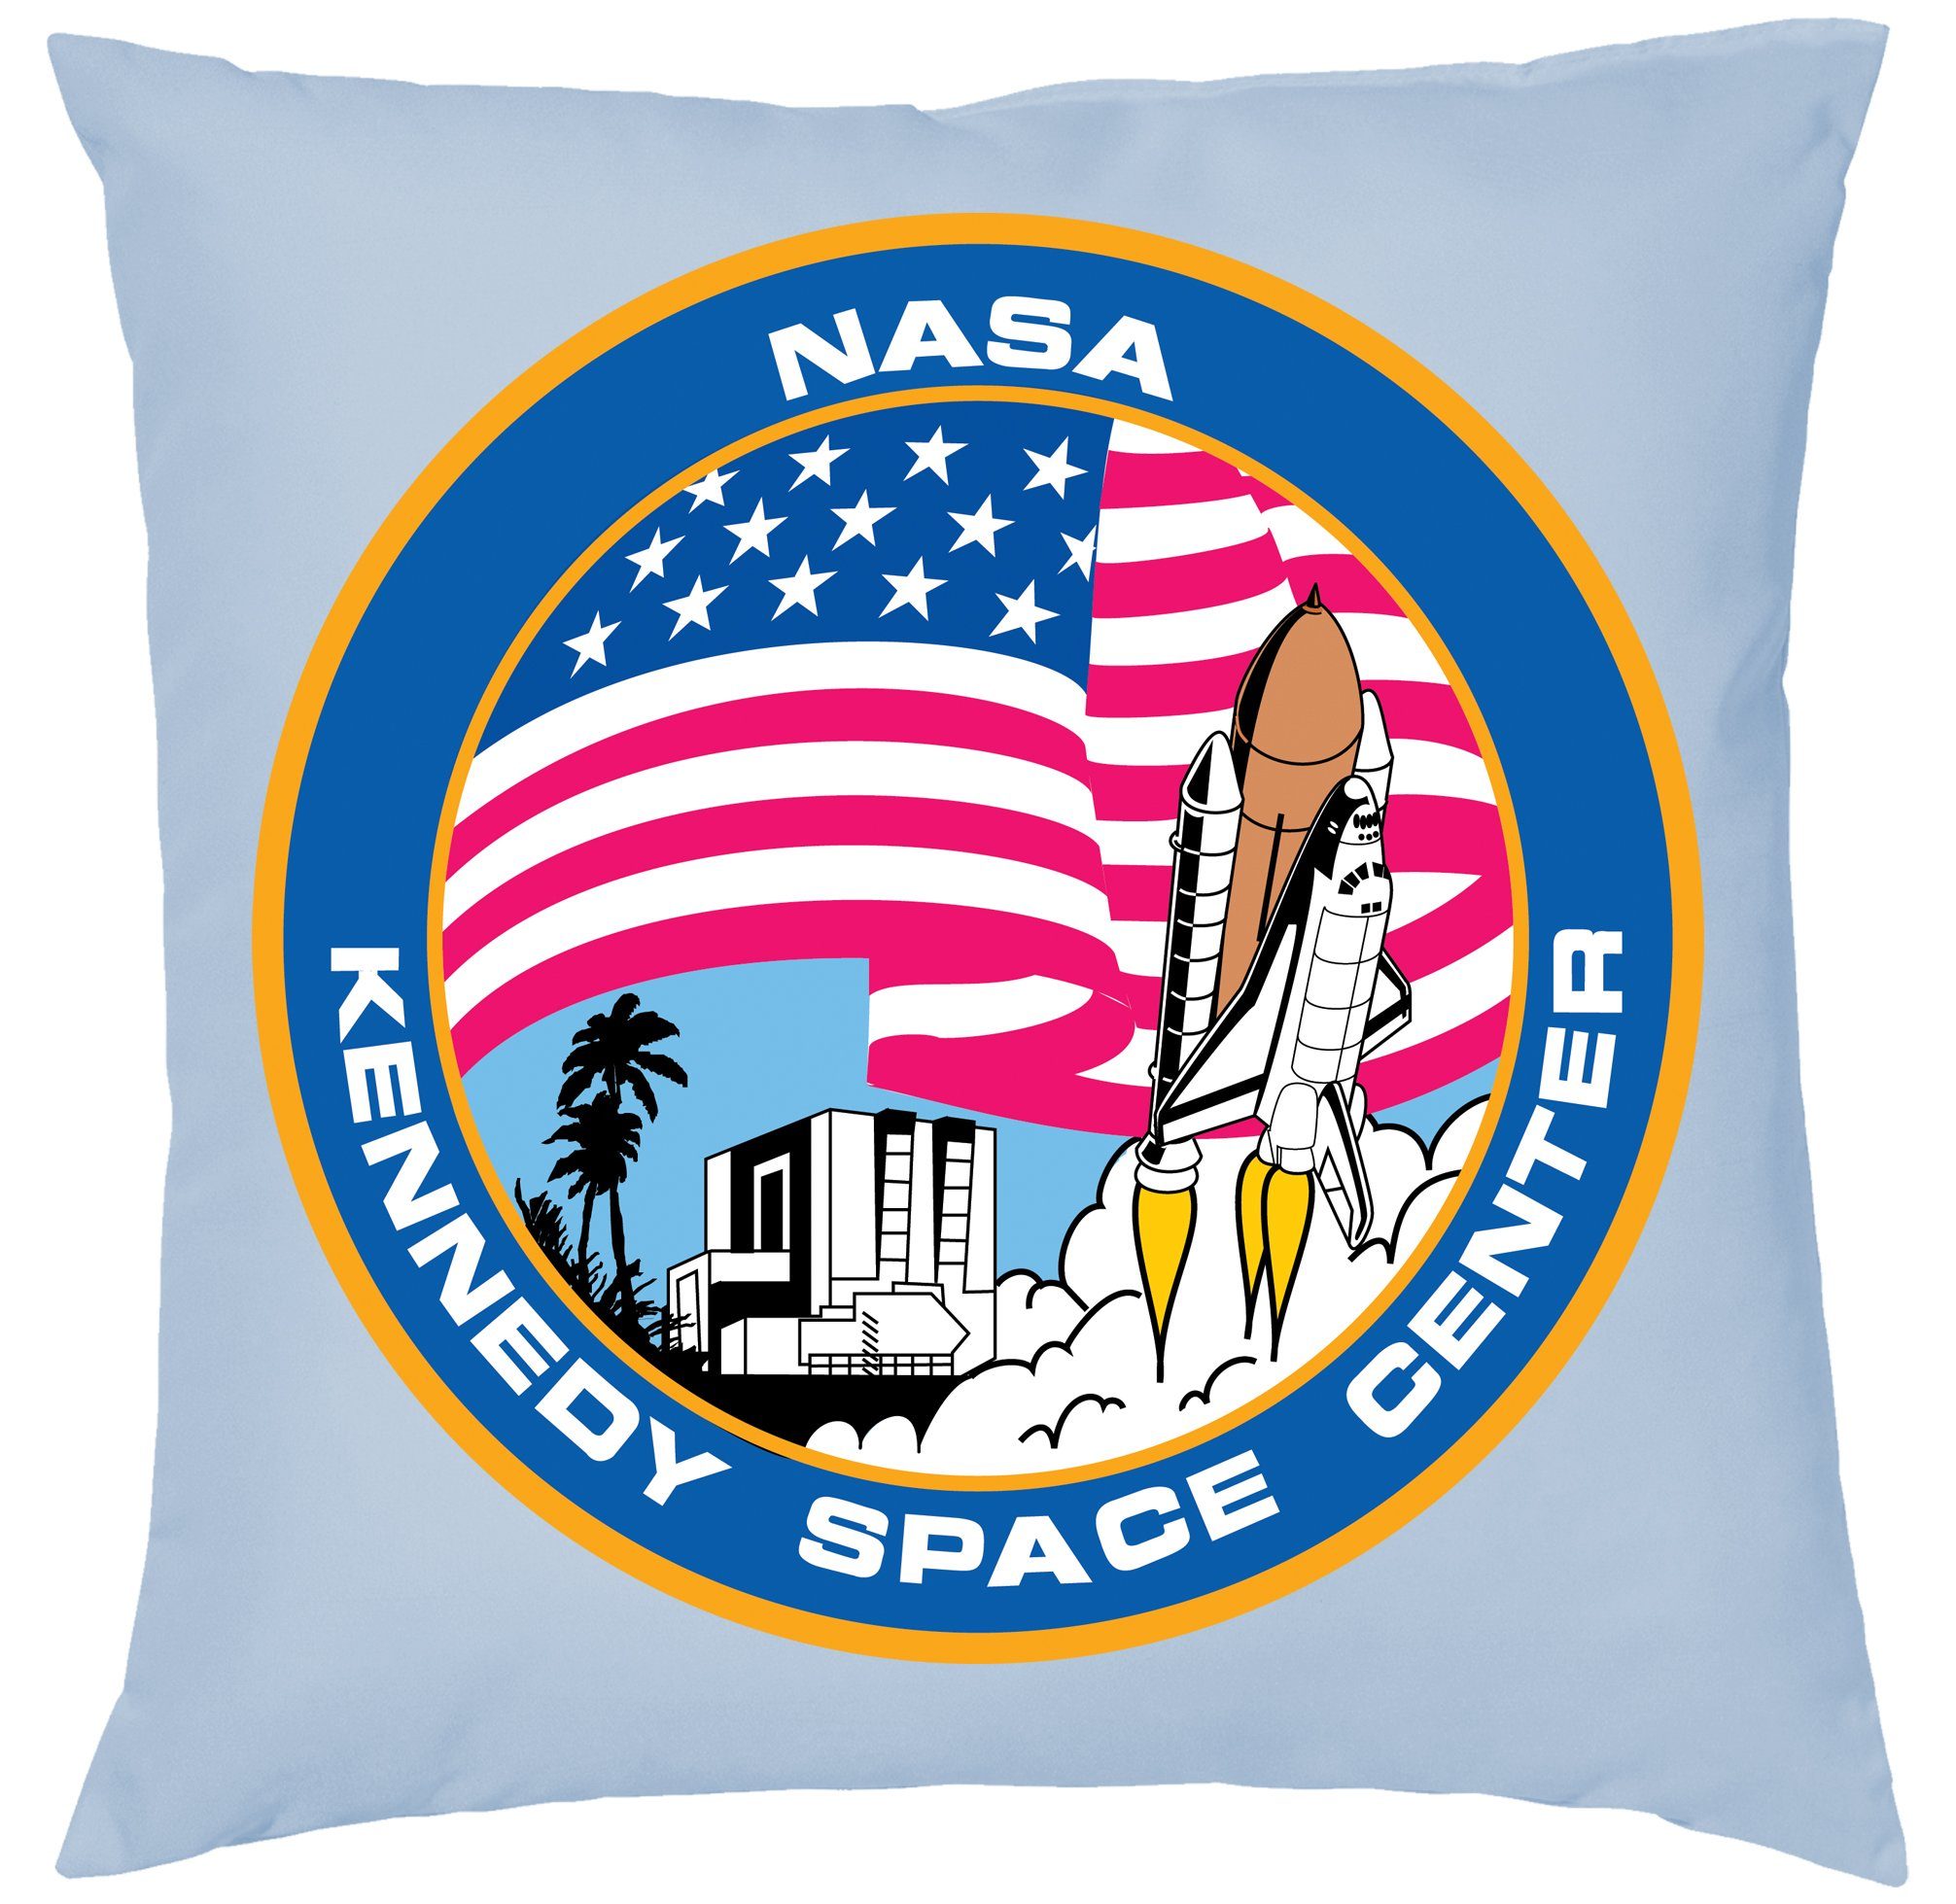 Blondie & Brownie Dekokissen NASA Kennedy Space Center Mission Elon Mars Mond, Kissen mit Füllung Hellblau